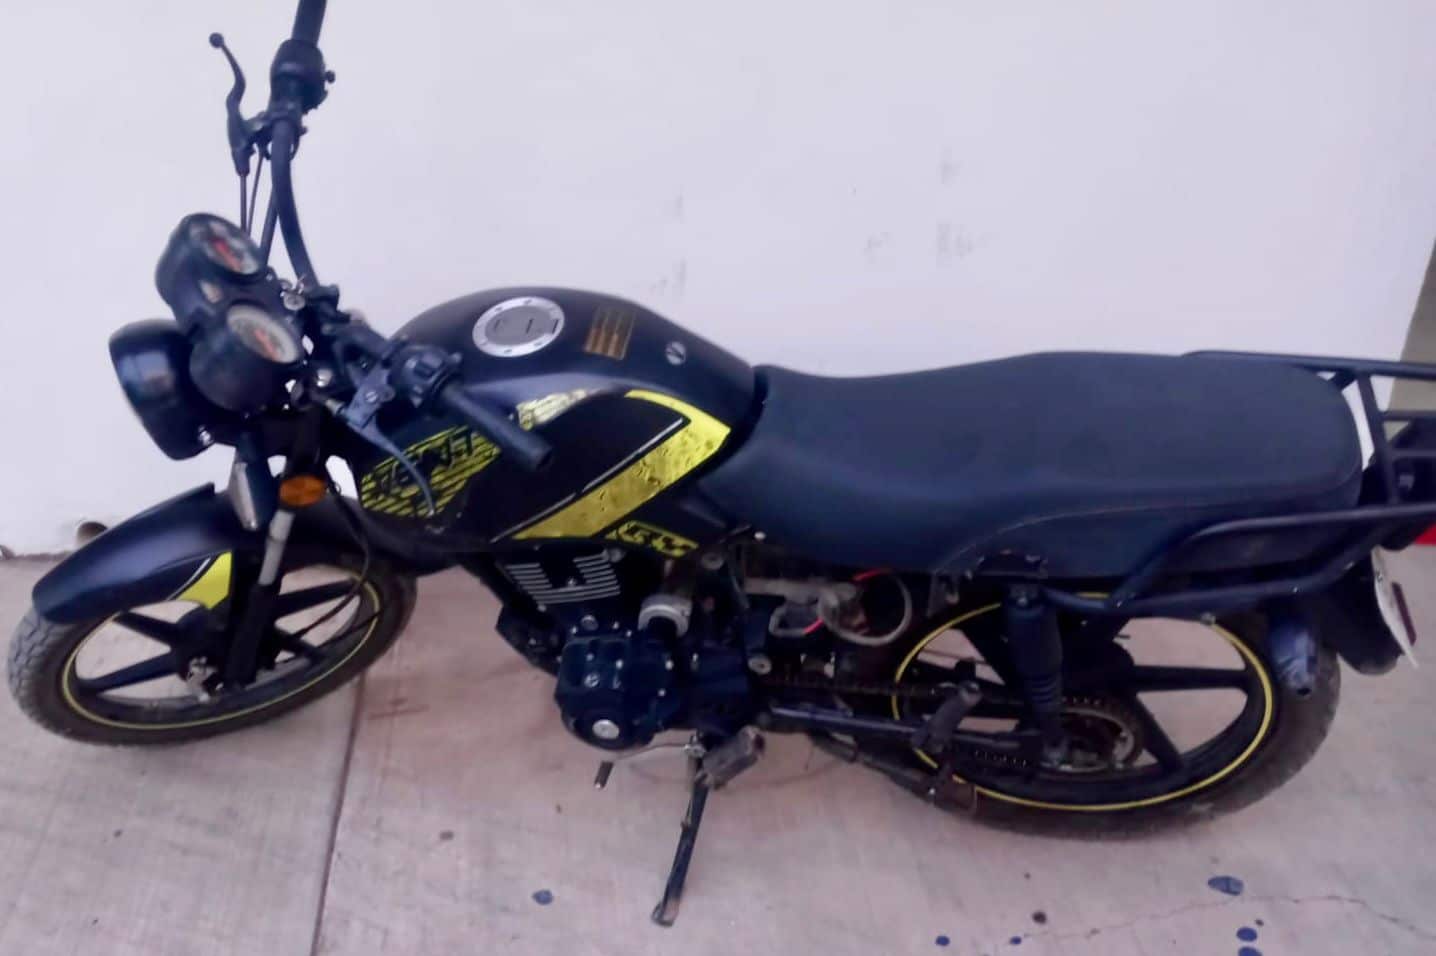 Motocicleta robada en la que iba José Ramón a exceso de velocidad en Culiacán